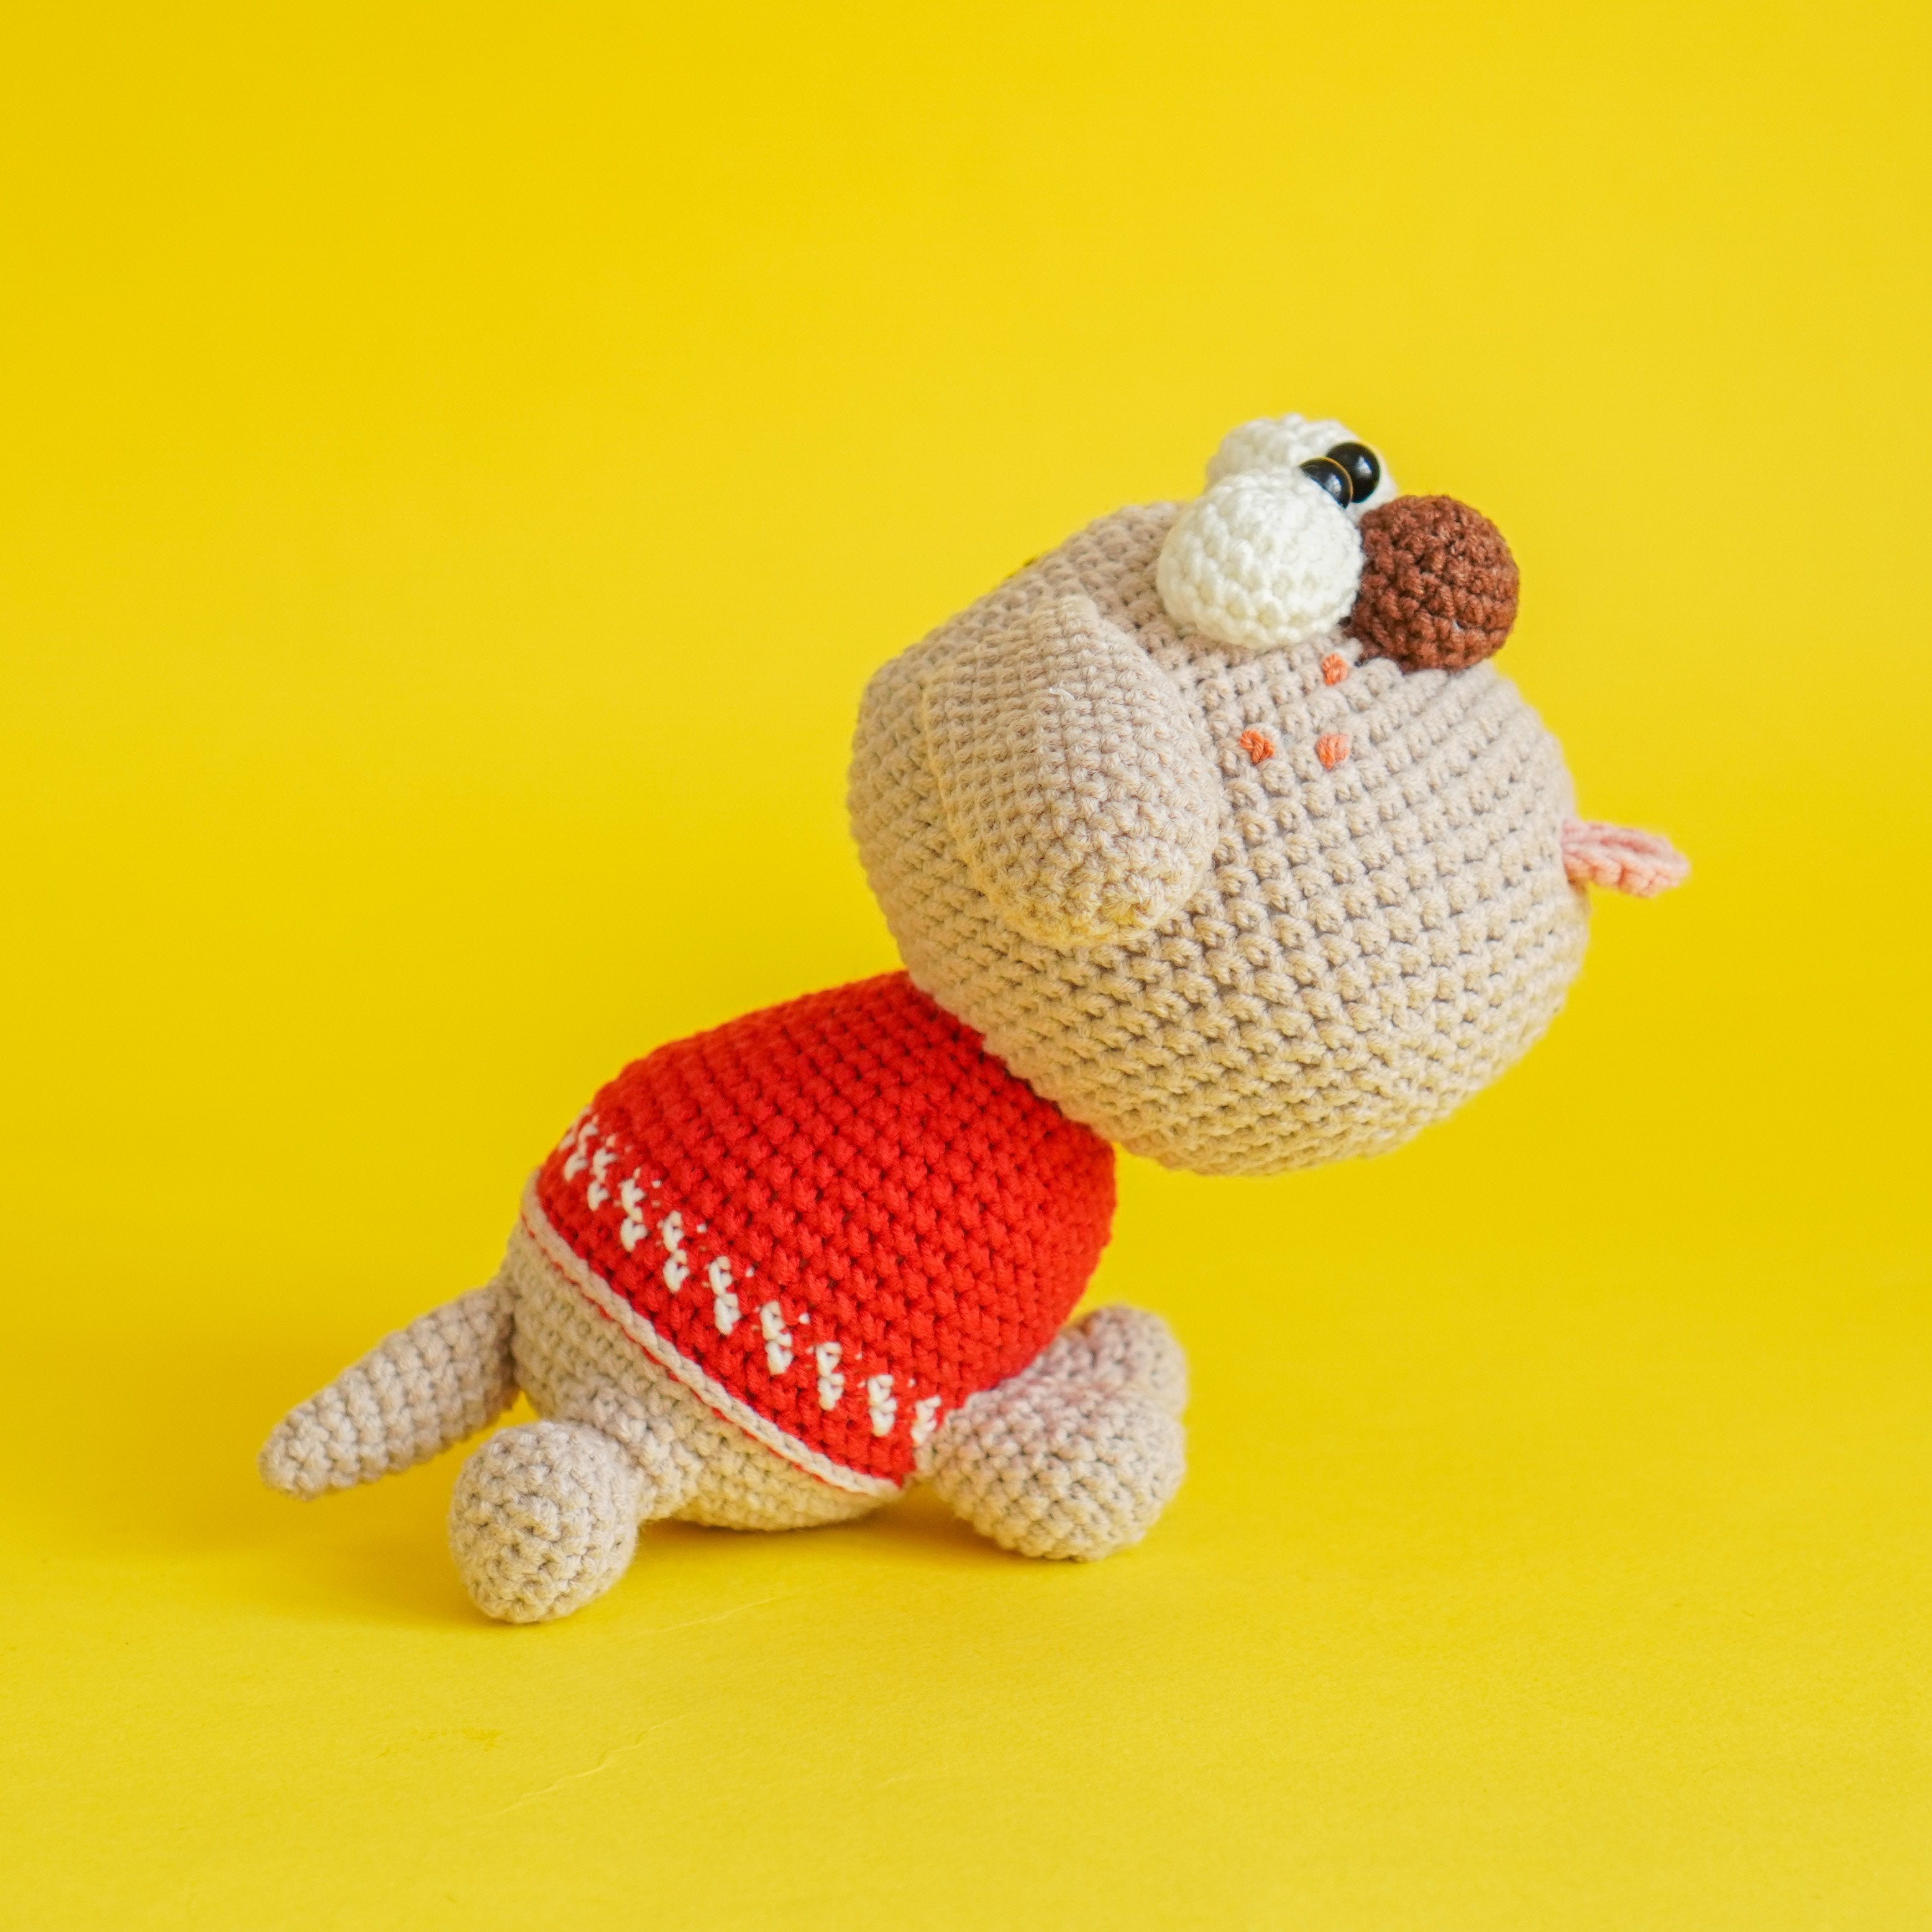 Full House: Pepaw, Memaw, Ginger & Bingo Bundle Crochet Pattern by Aquariwool Crochet (Crochet Doll Pattern/Amigurumi Pattern for Baby gift)